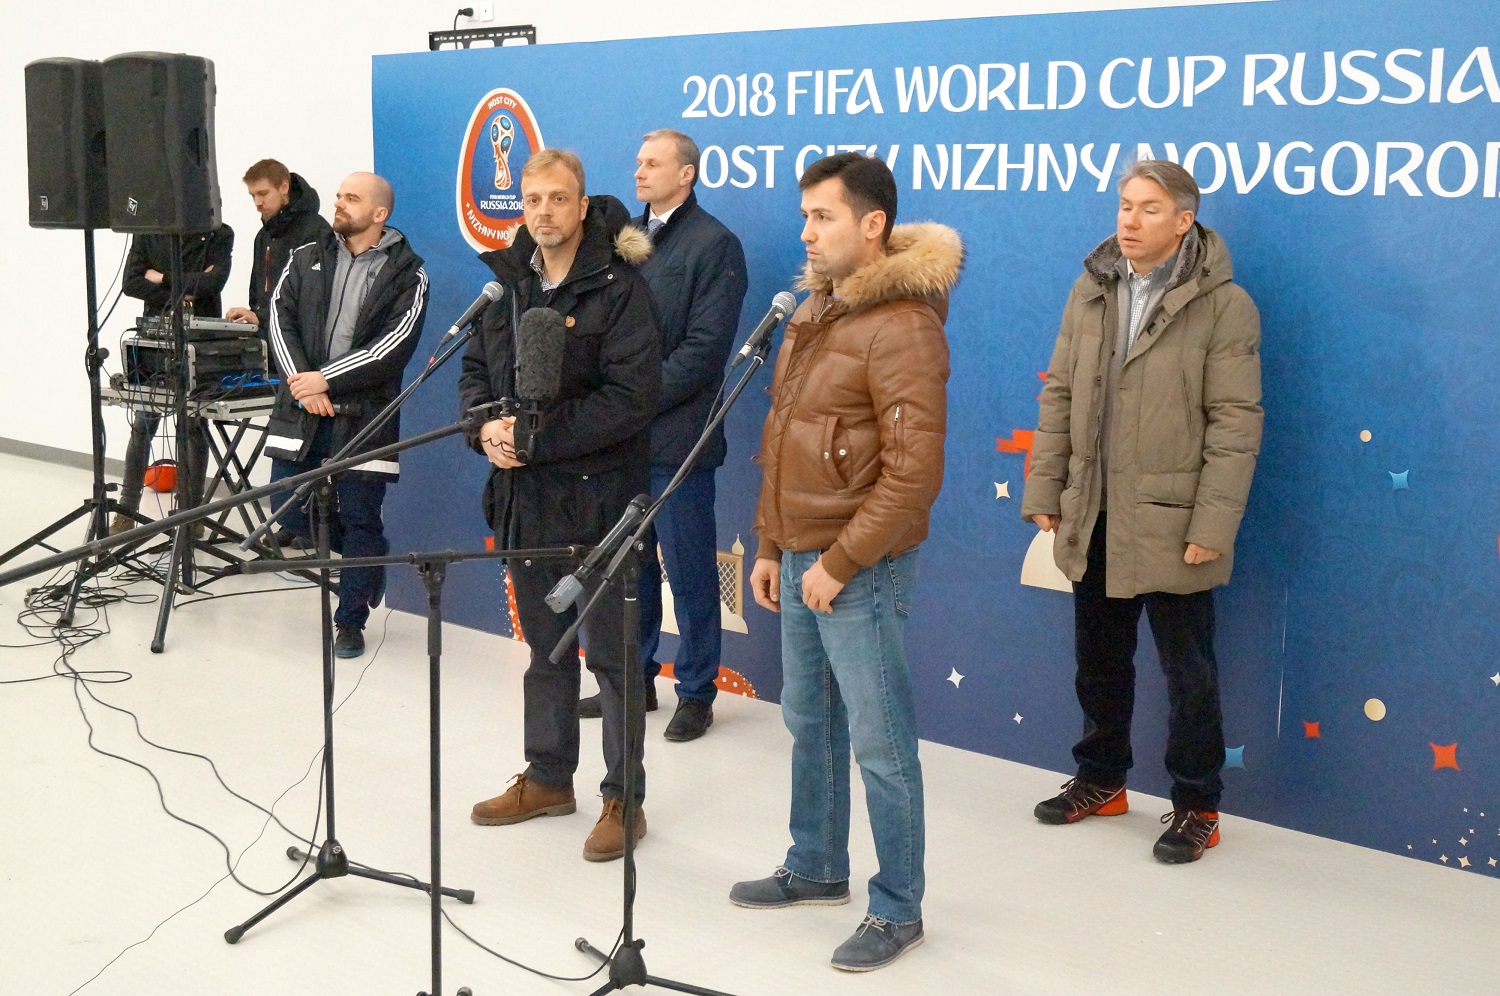 Представители FIFA побывали в Нижнем Новгороде с финальной проверкой нового стадиона (ФОТО) - фото 2